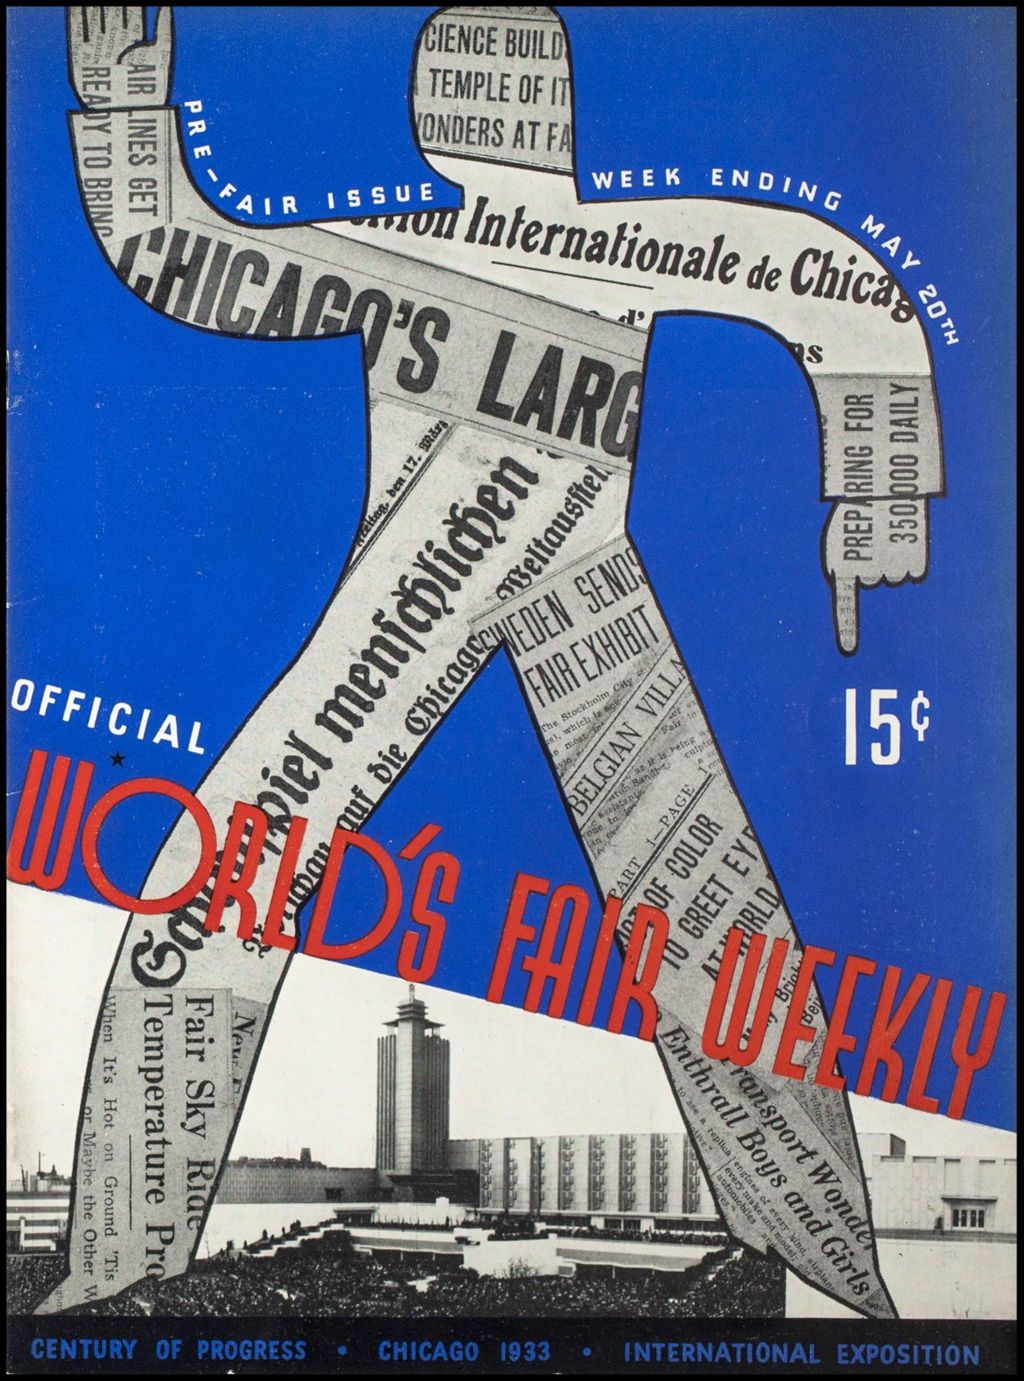 World's Fair Weekly, Week Ending May 20, 1933